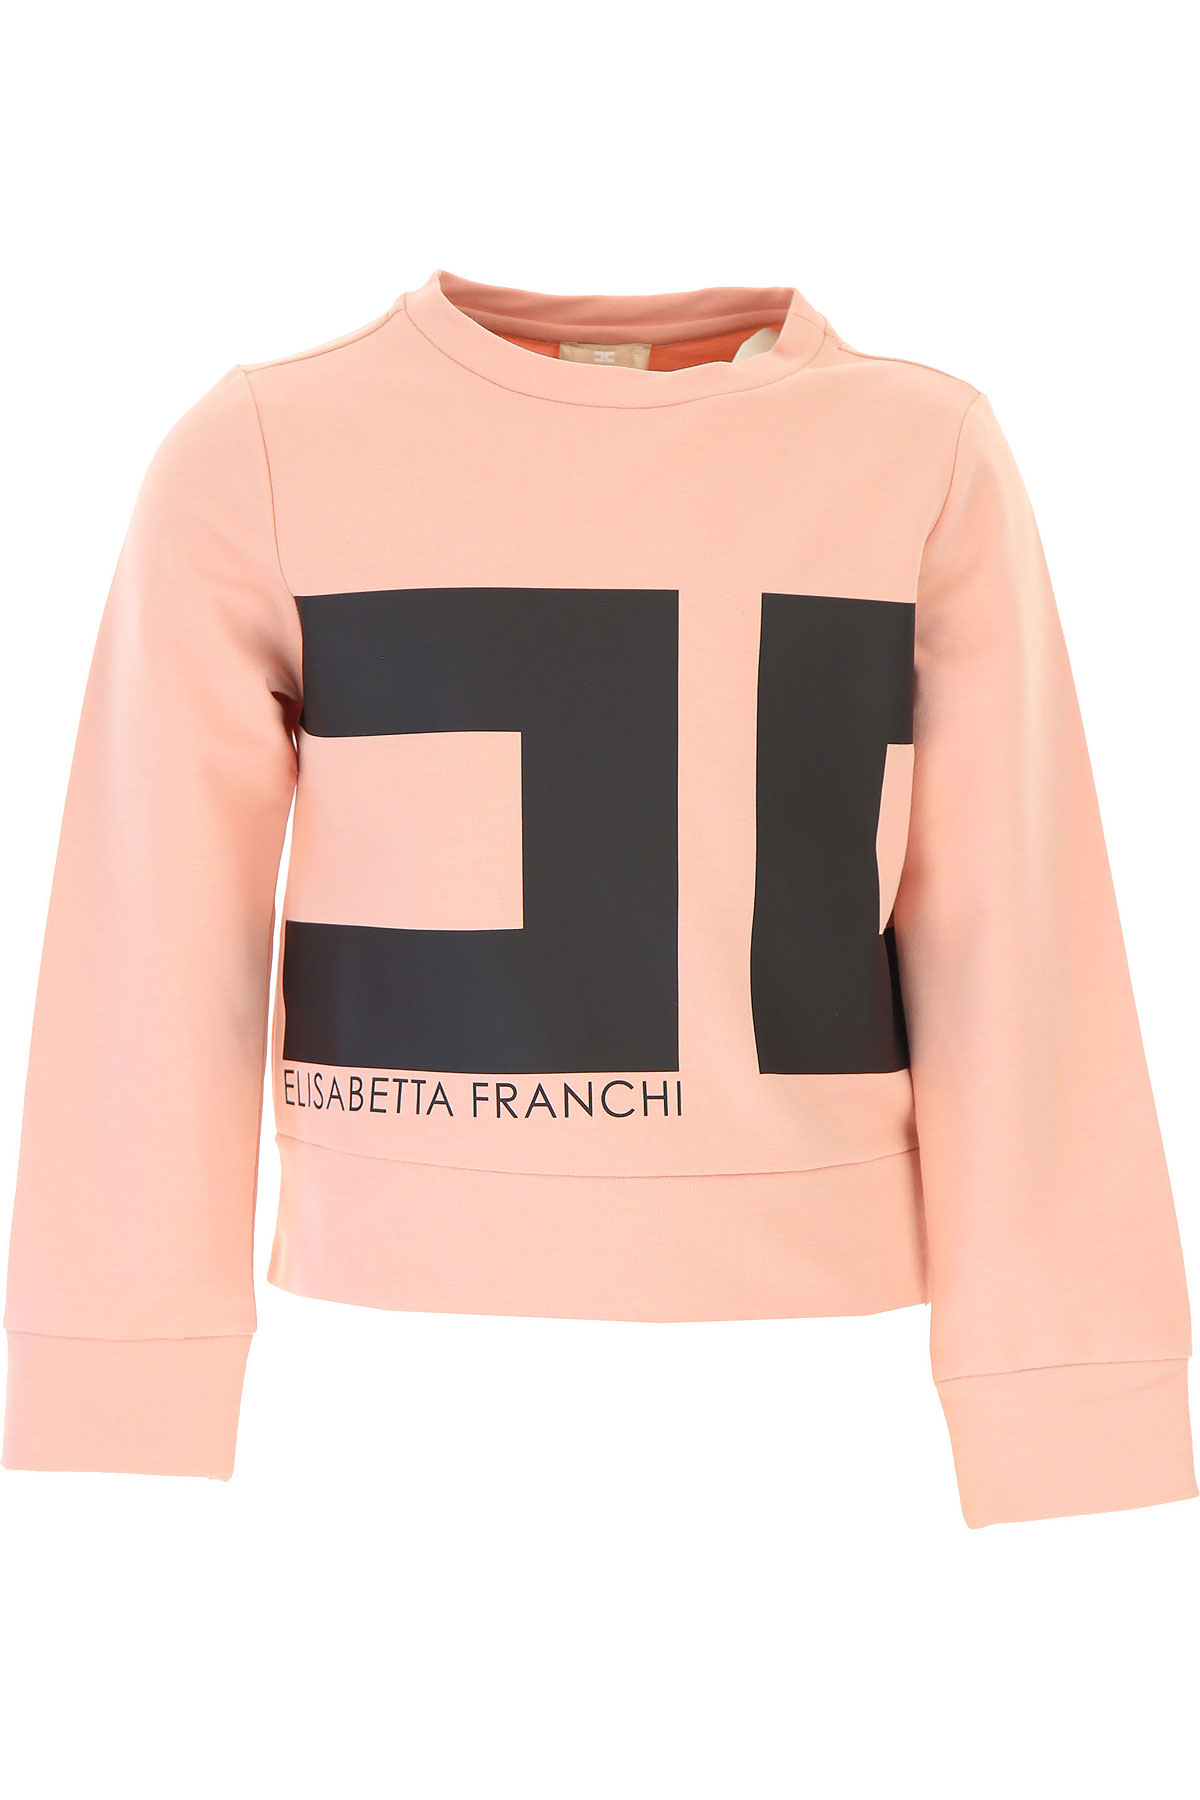 Elisabetta Franchi Kinder Sweatshirt & Kapuzenpullover für Mädchen Günstig im Sale, Pink, Baumwolle, 2017, L M S XS XXS